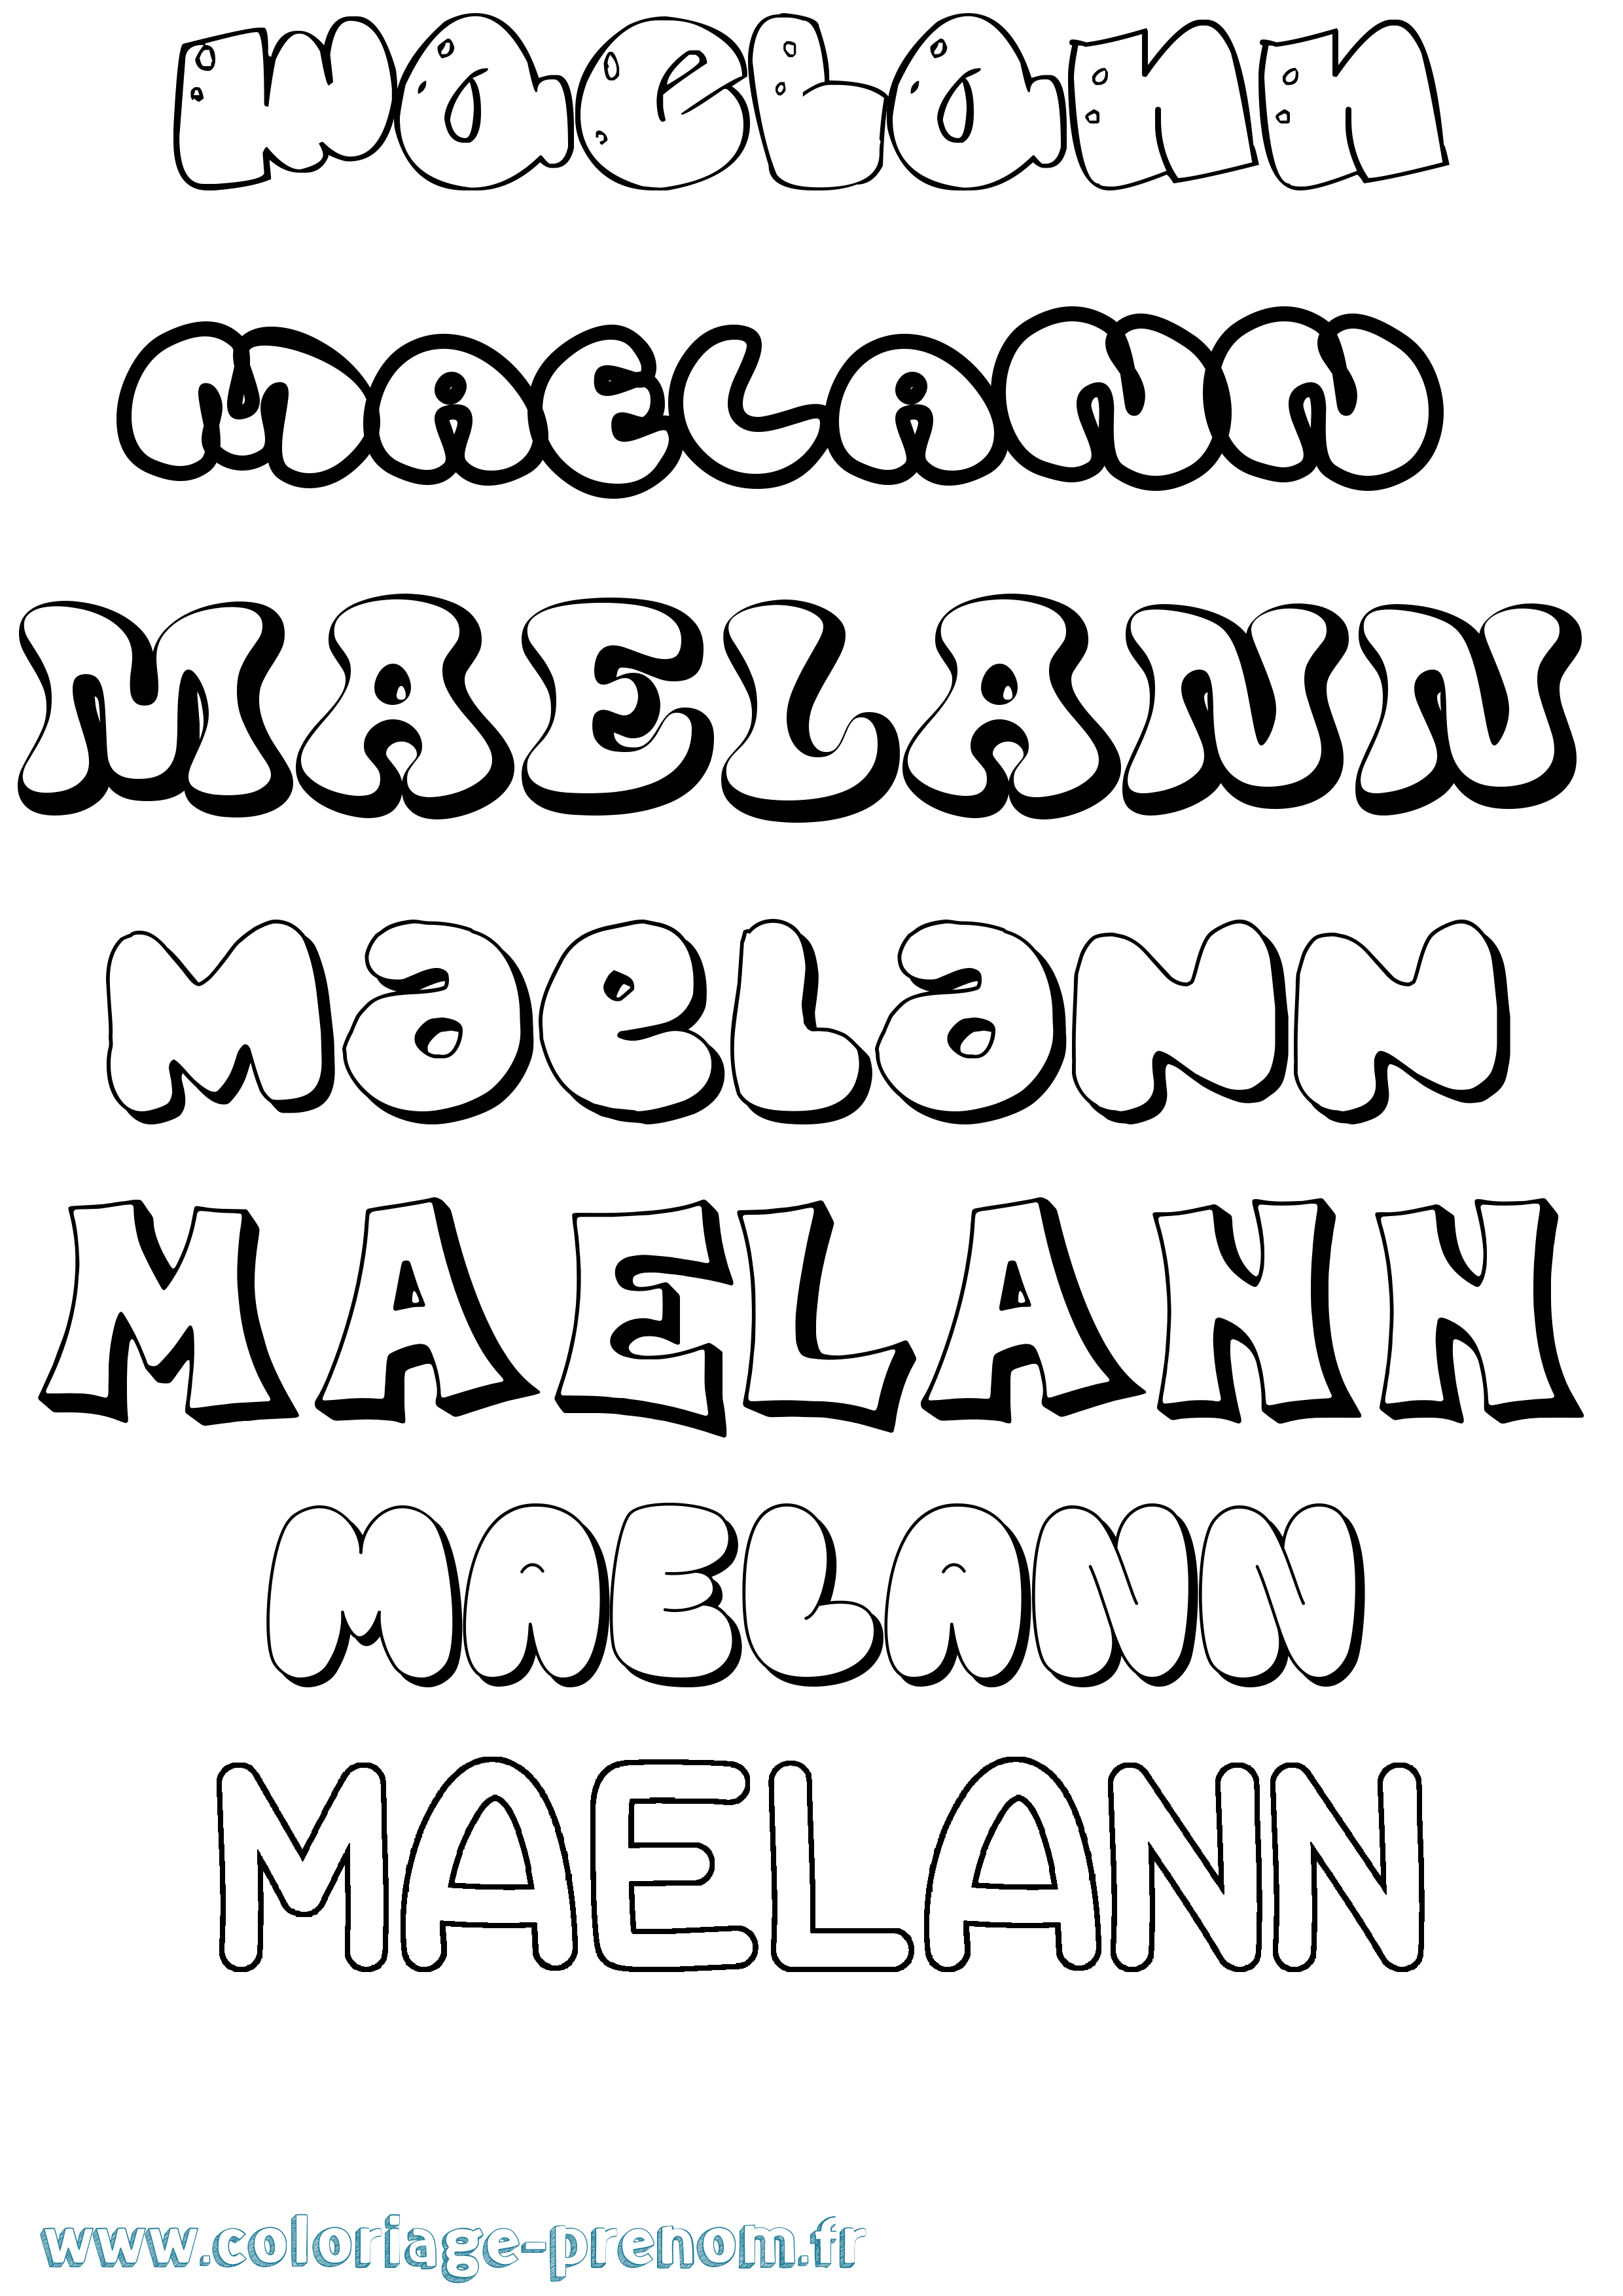 Coloriage prénom Maelann Bubble